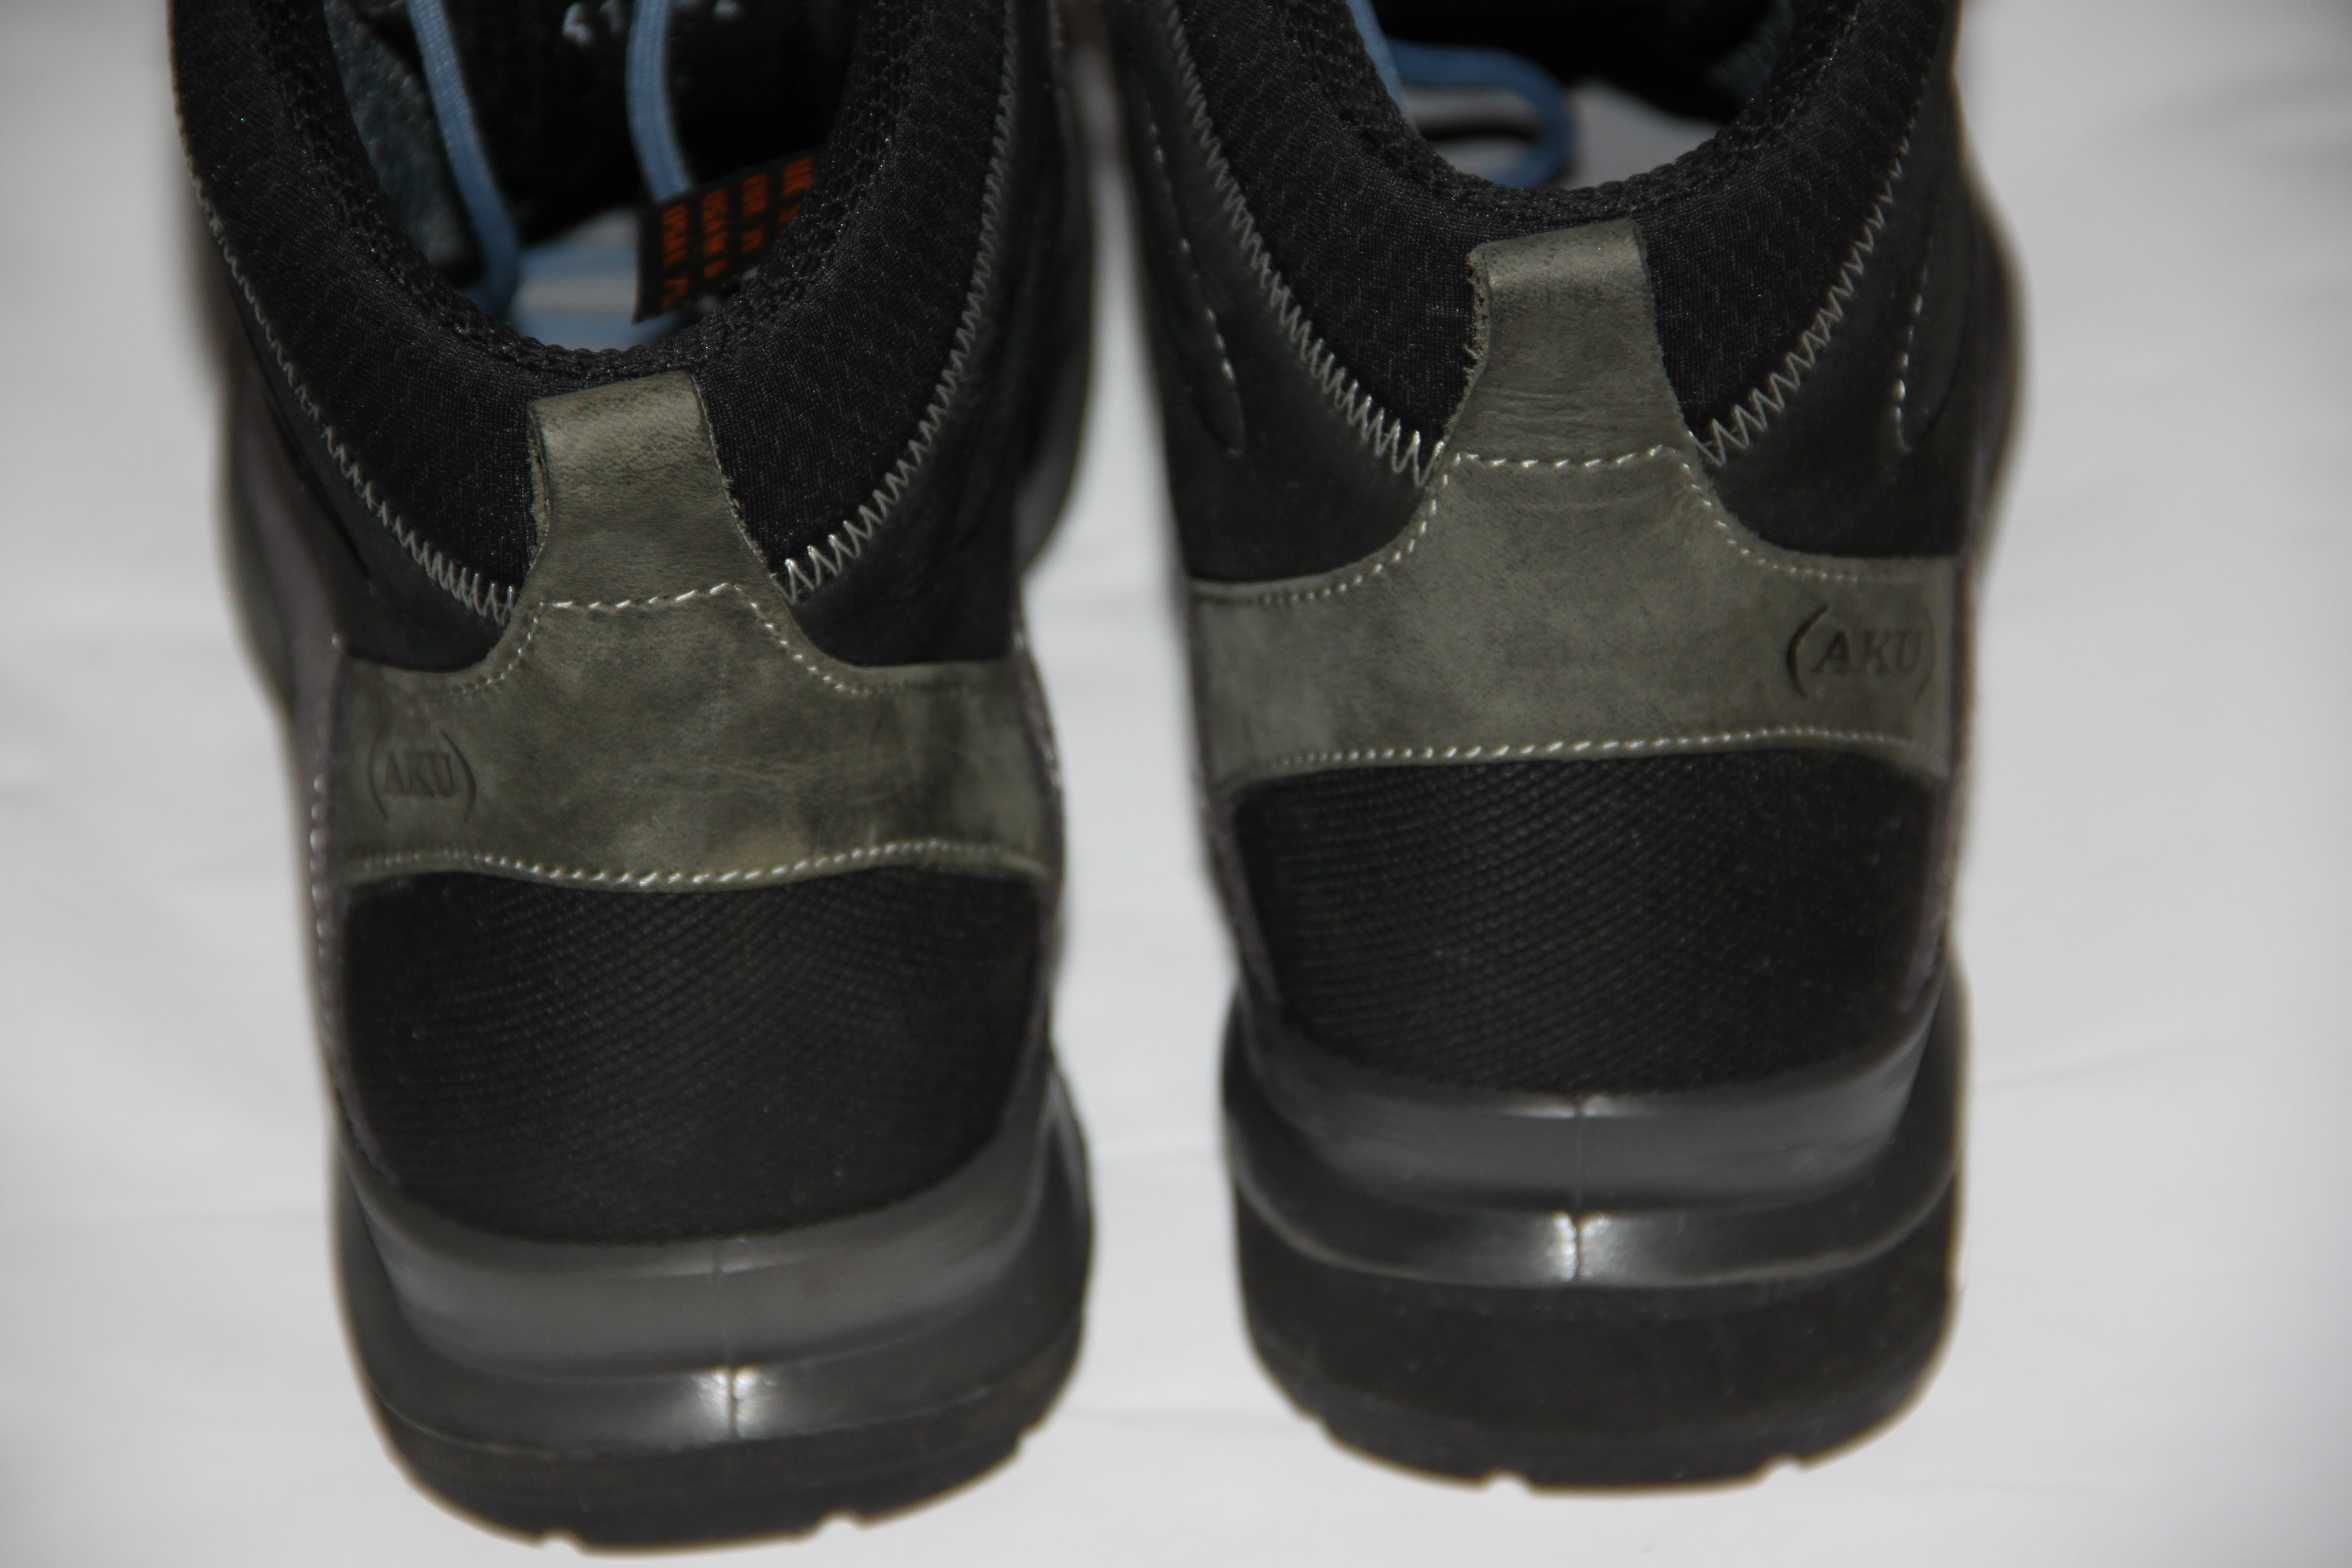 AKU Gore-Tex buty damskie outdoor trekking prawy but proteza 1,2 cm